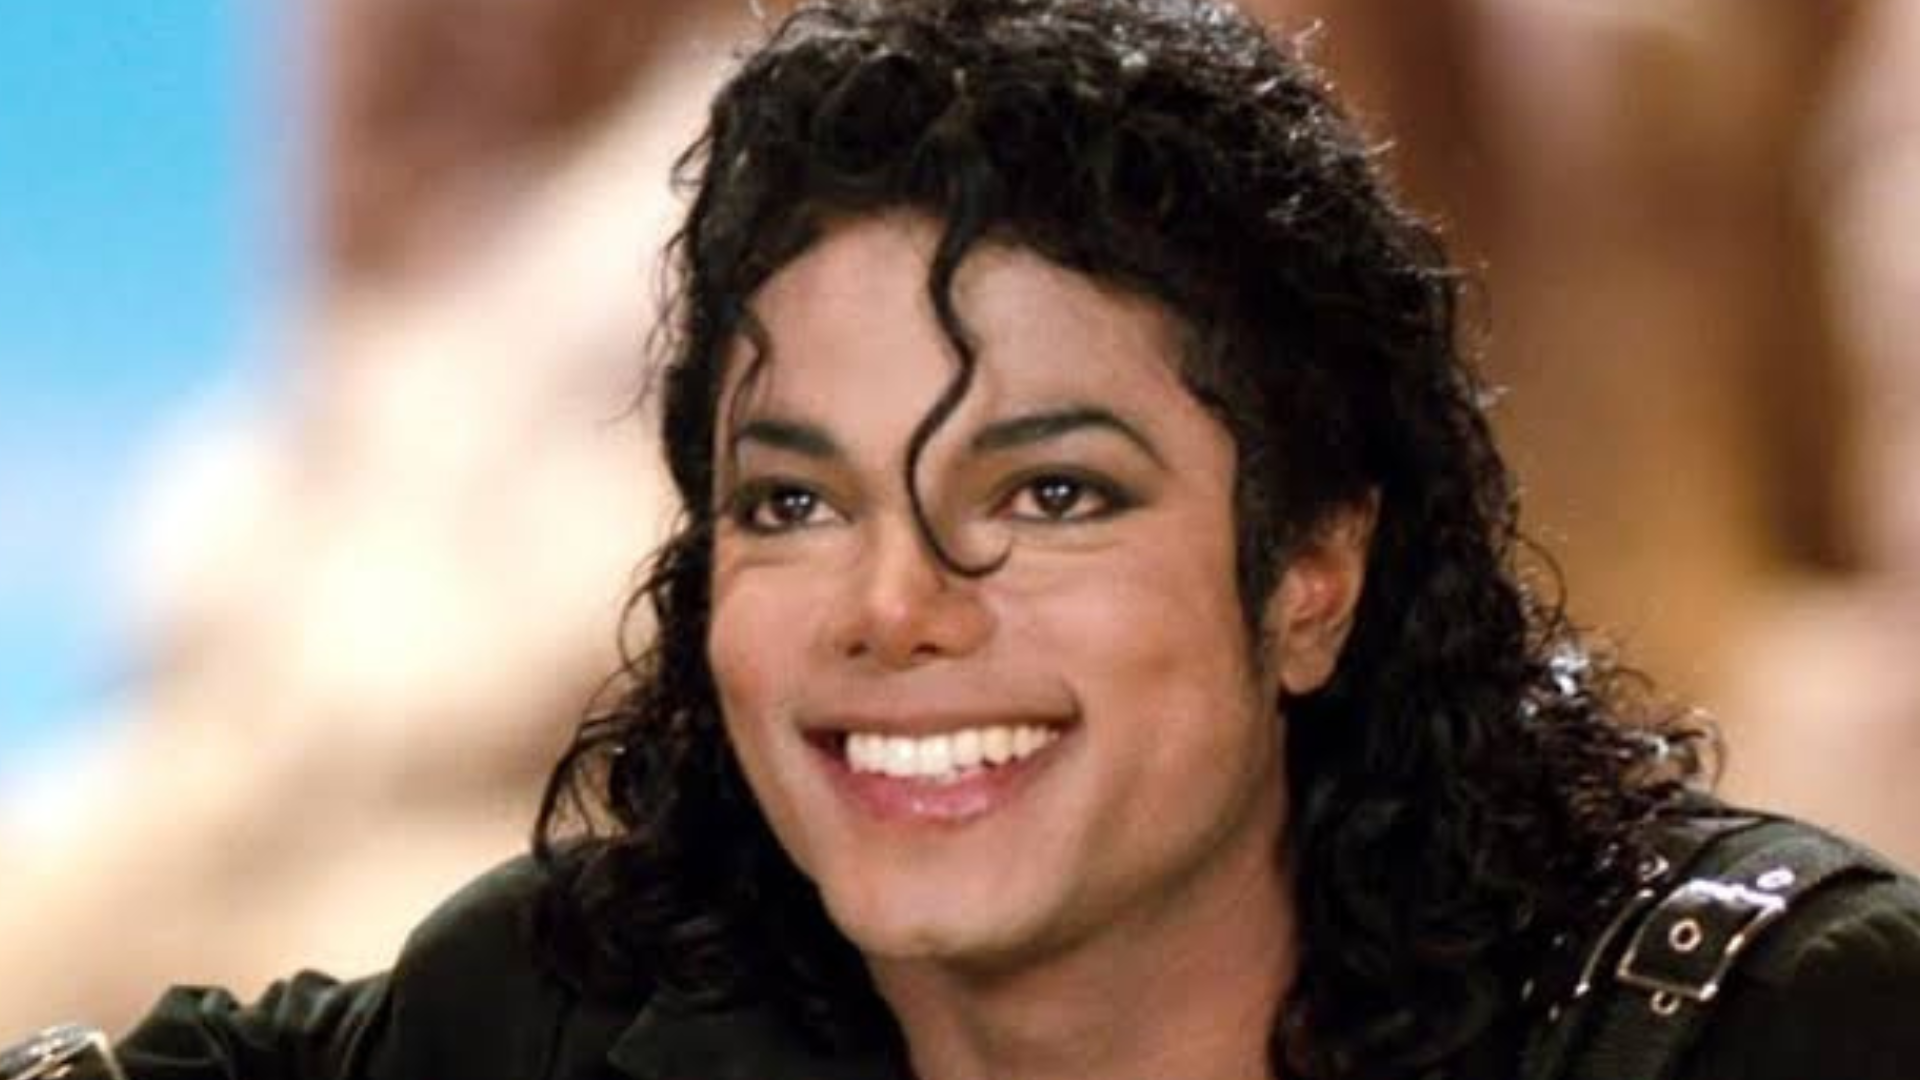 Cinebiografia de Michael Jackson ganha data de estreia